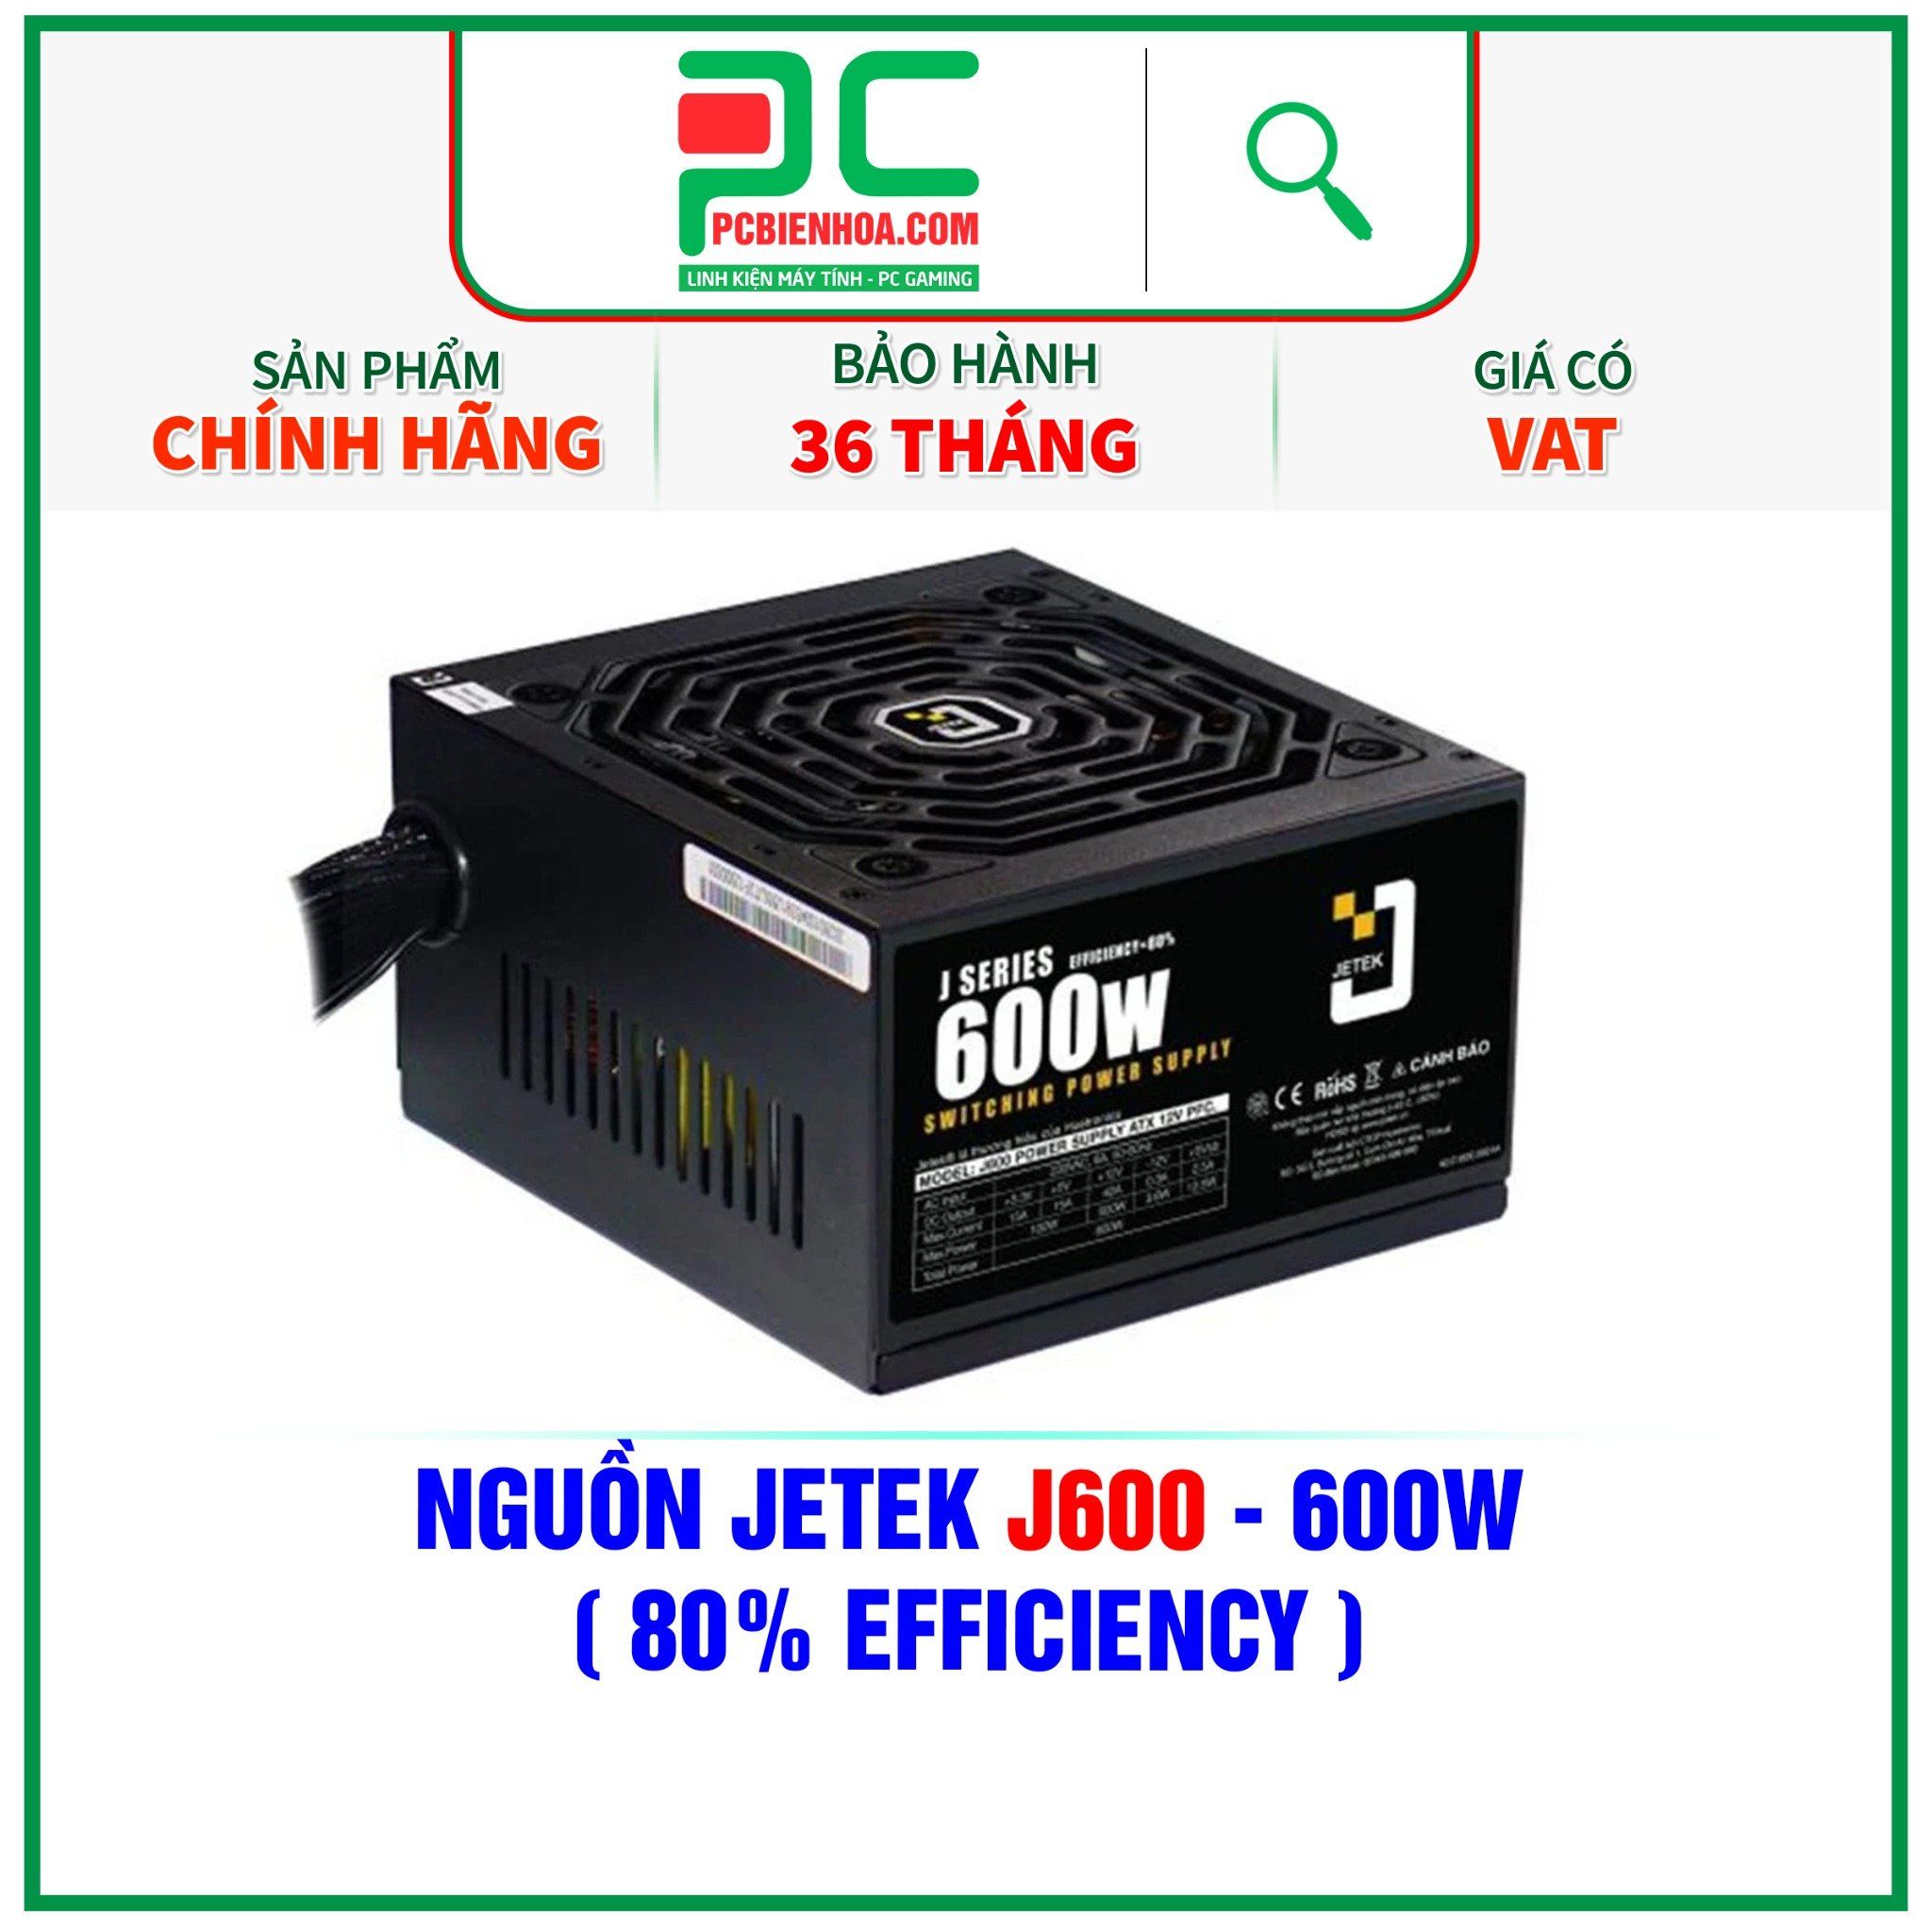  NGUỒN JETEK J600 - 600W ( 80% EFFICIENCY ) 